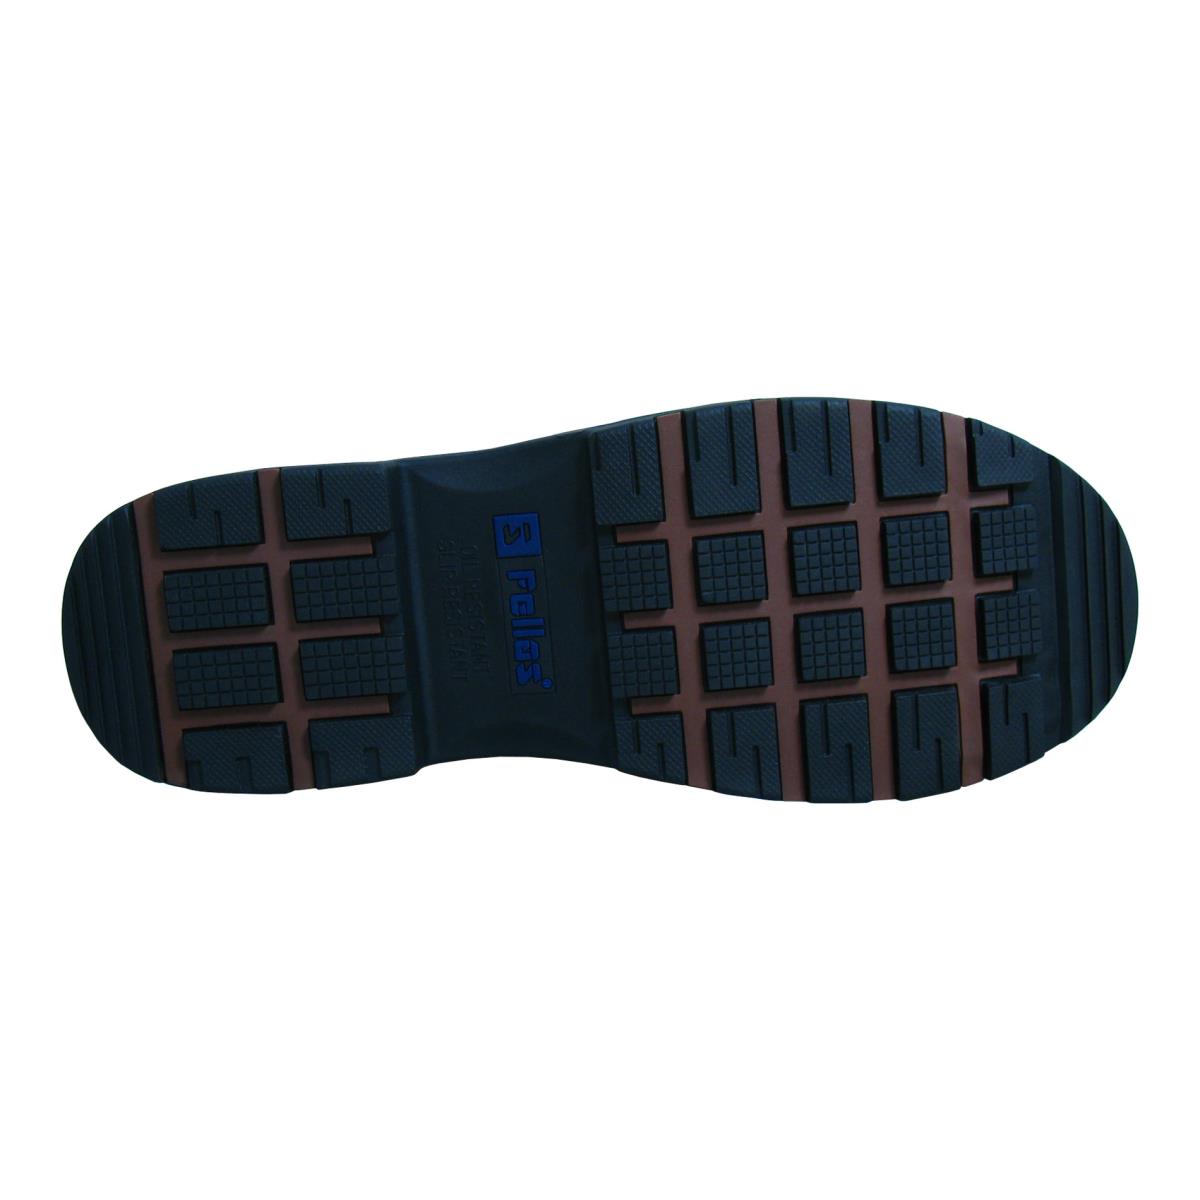 Genuine Grip Footwear- 6300 Trekker Composite Toe Puncture Resistant Brown Men's Boot-eSafety Supplies, Inc